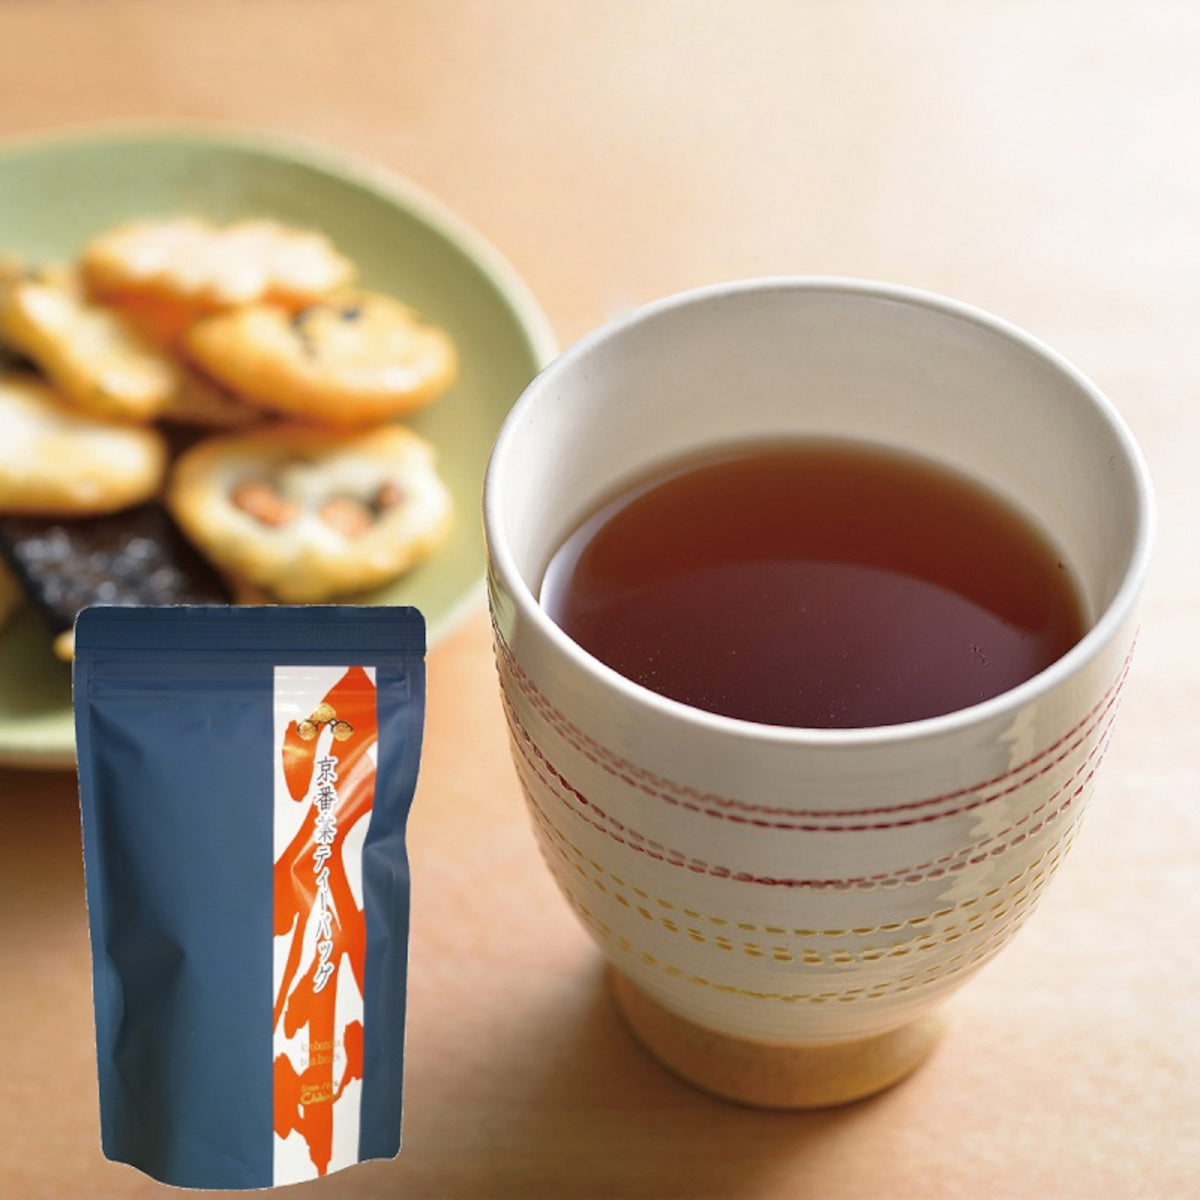 Kyobancha (Thé vert japonais torréfié) - 30 Sachets de thé